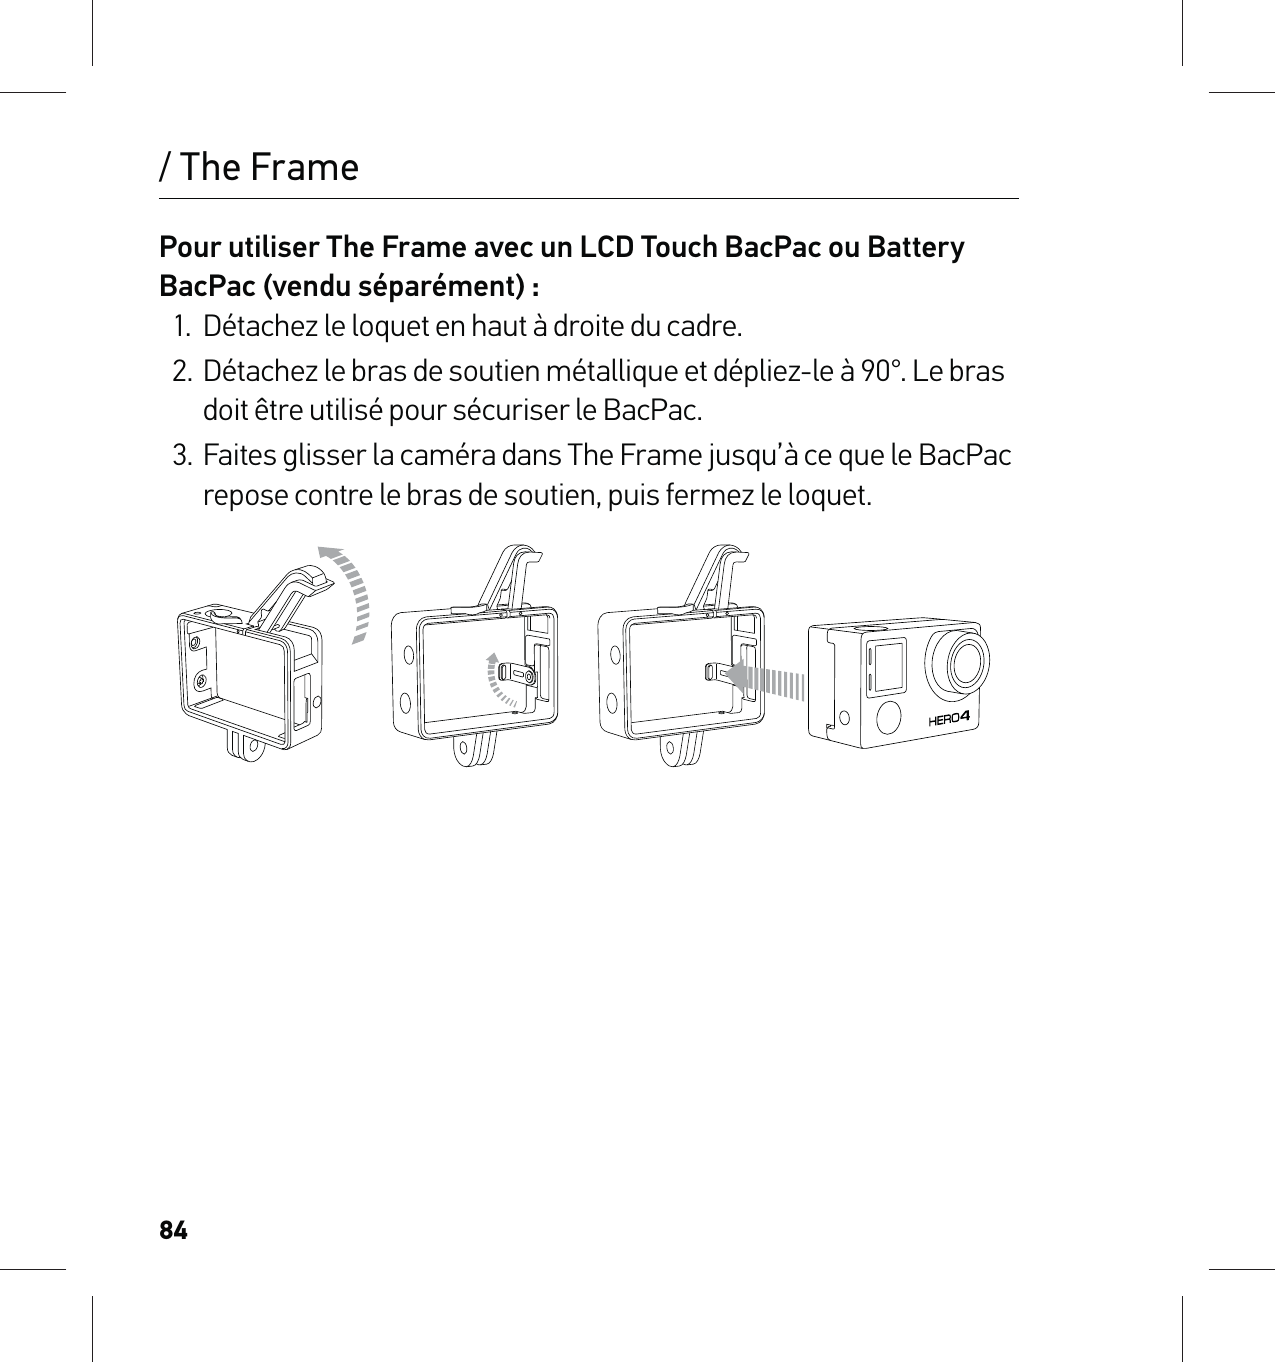 84/ The FramePour utiliser The Frame avec un LCD Touch BacPac ou Battery BacPac (vendu séparément) :1.  Détachez le loquet en haut à droite du cadre.2.  Détachez le bras de soutien métallique et dépliez-le à 90°. Le bras doit être utilisé pour sécuriser le BacPac.3.  Faites glisser la caméra dans The Frame jusqu’à ce que le BacPac repose contre le bras de soutien, puis fermez le loquet.